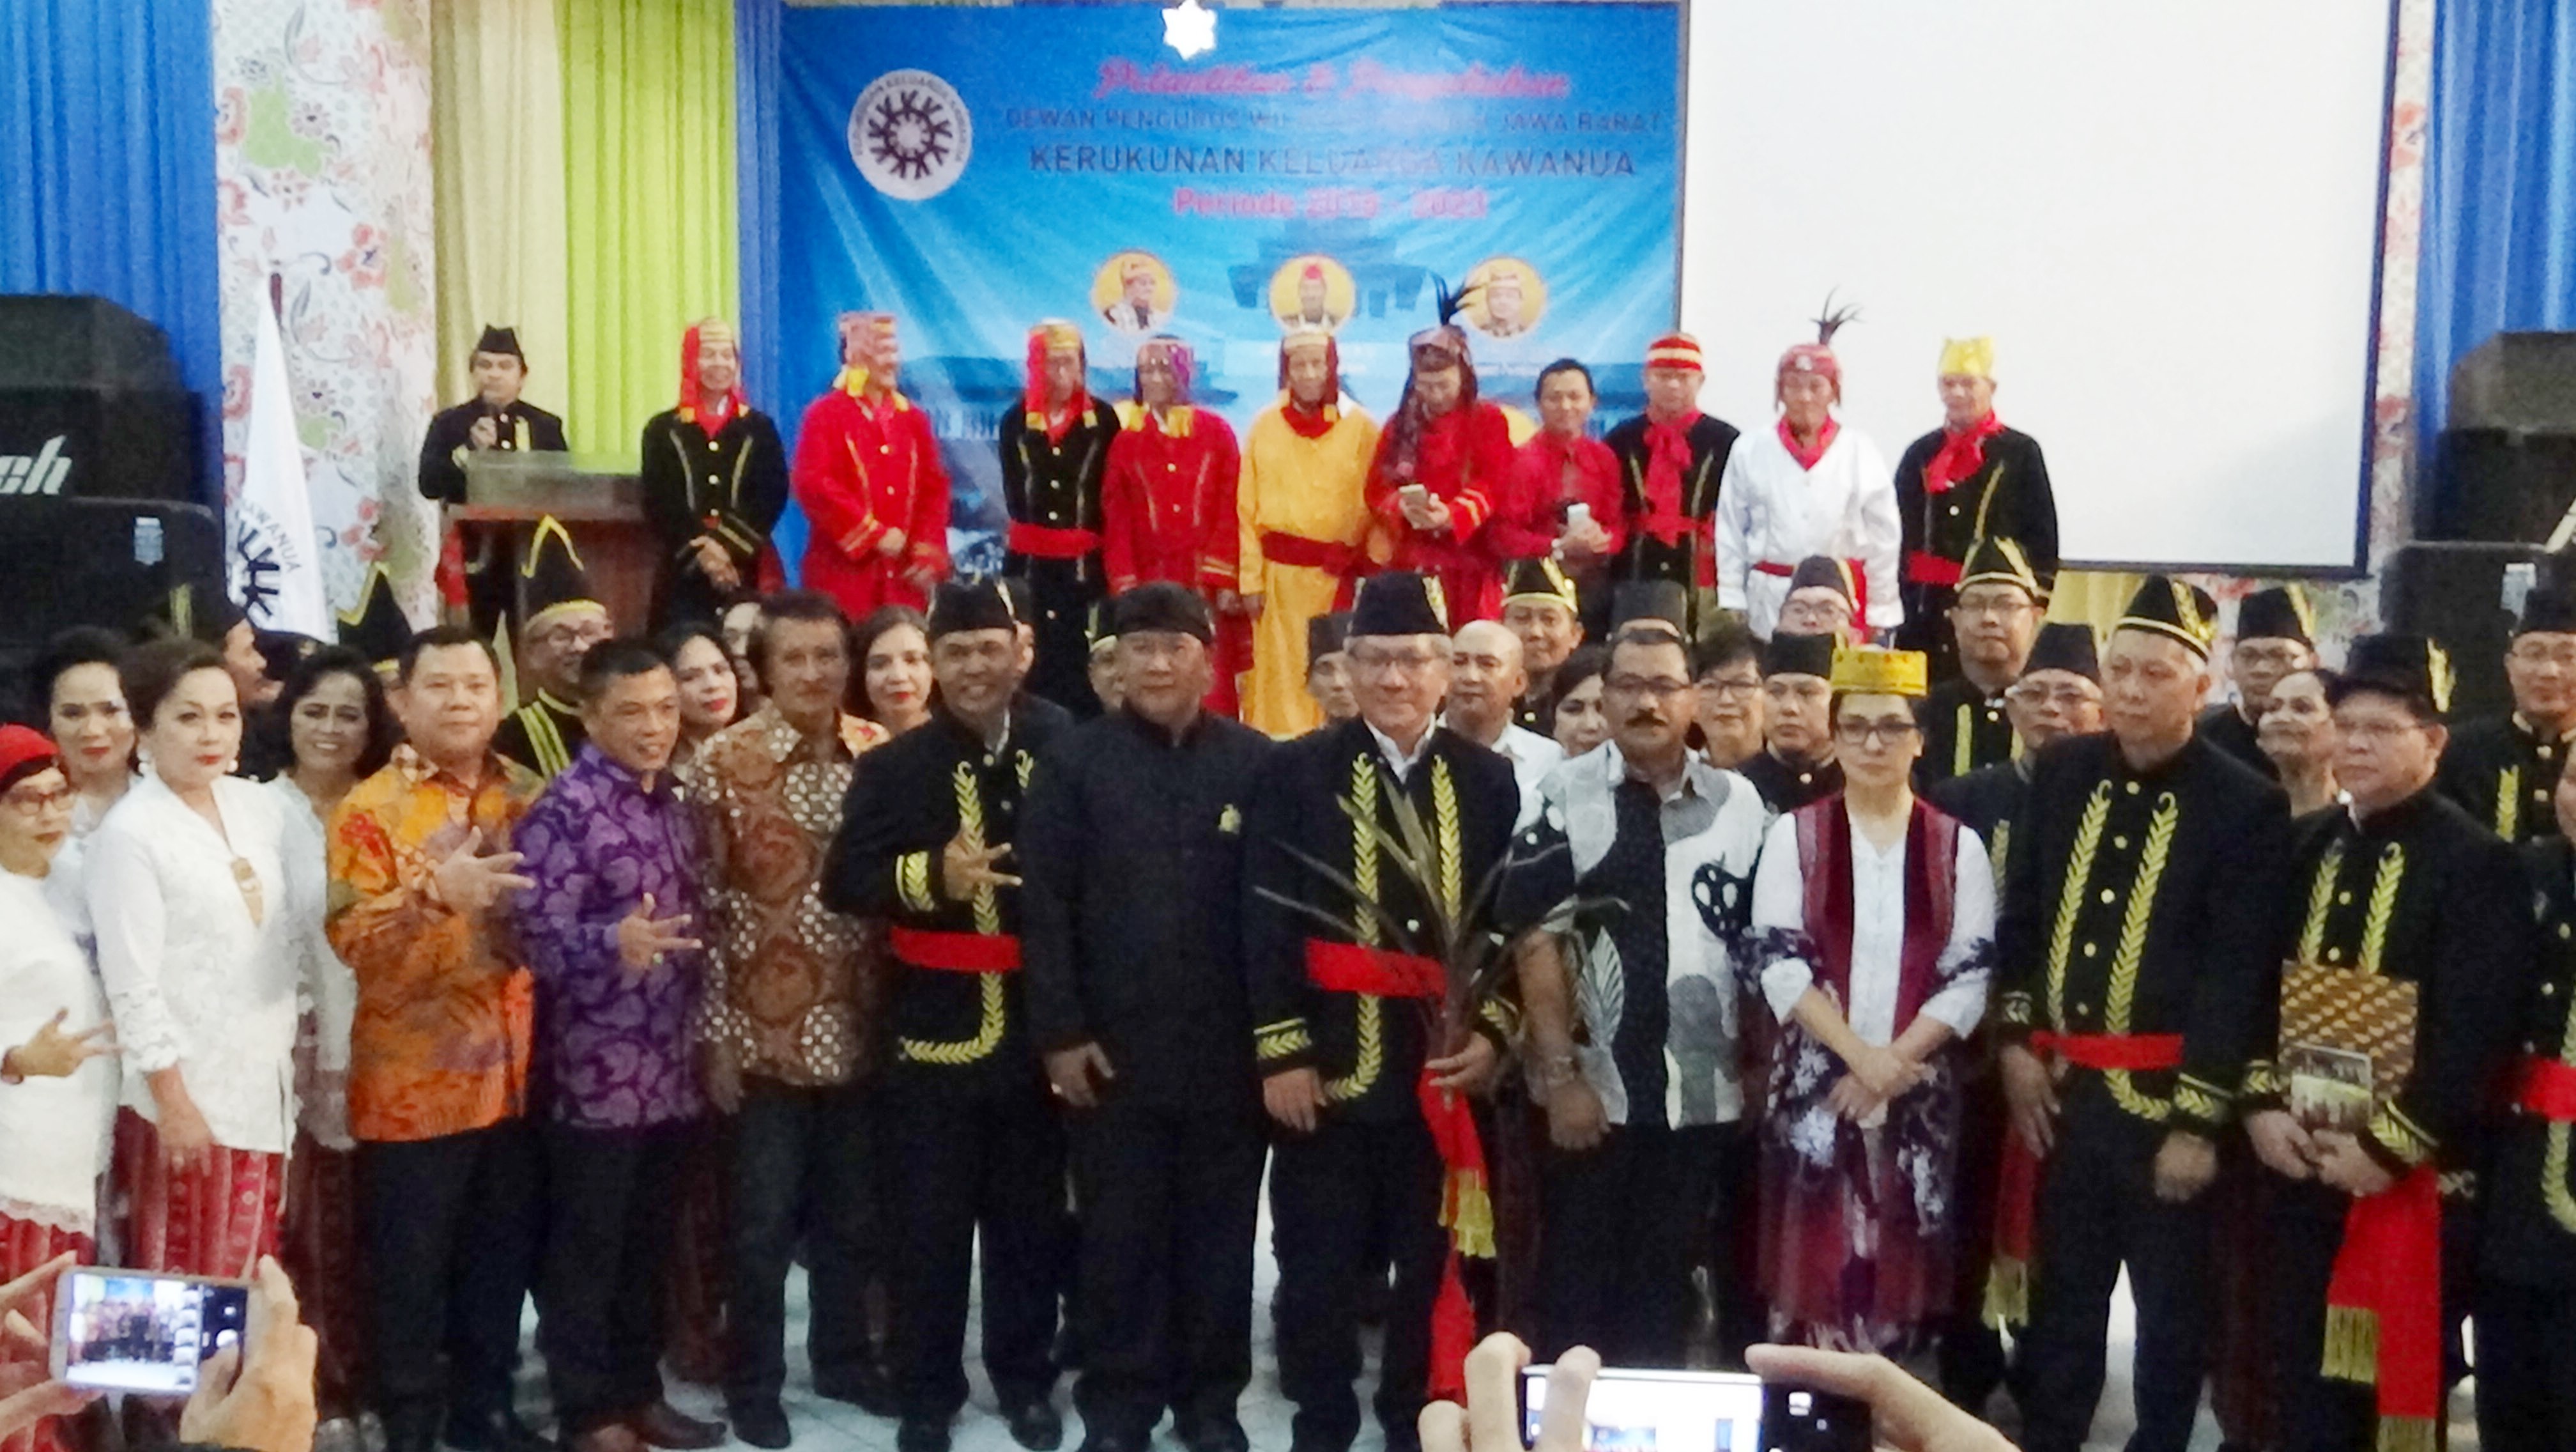 Angelica Tengker Lantik Pengurus DPW Kerukunan Keluarga Kawanua Jawa Barat